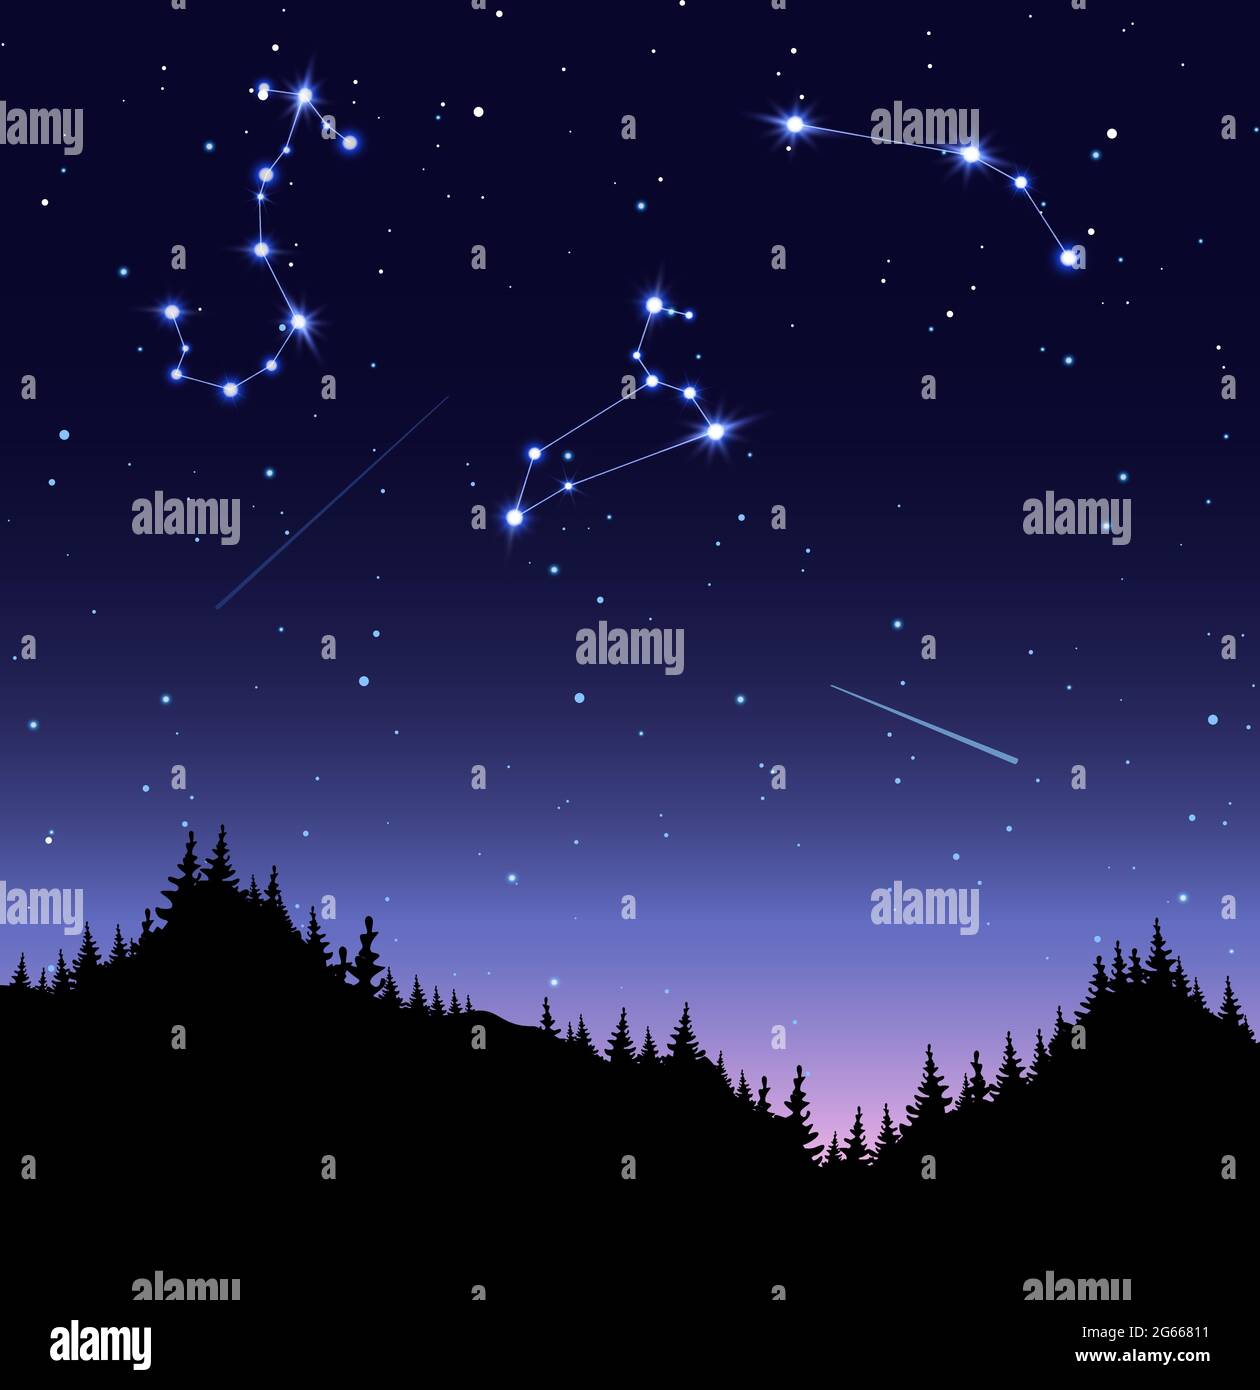 Sternbilder flache Vektordarstellung. Skorpion, Löwe und Widder am  Sternenhimmel. Nacht, Dunkelheit, leuchtende Himmelskörper, funkelnde  Sterne Stock-Vektorgrafik - Alamy